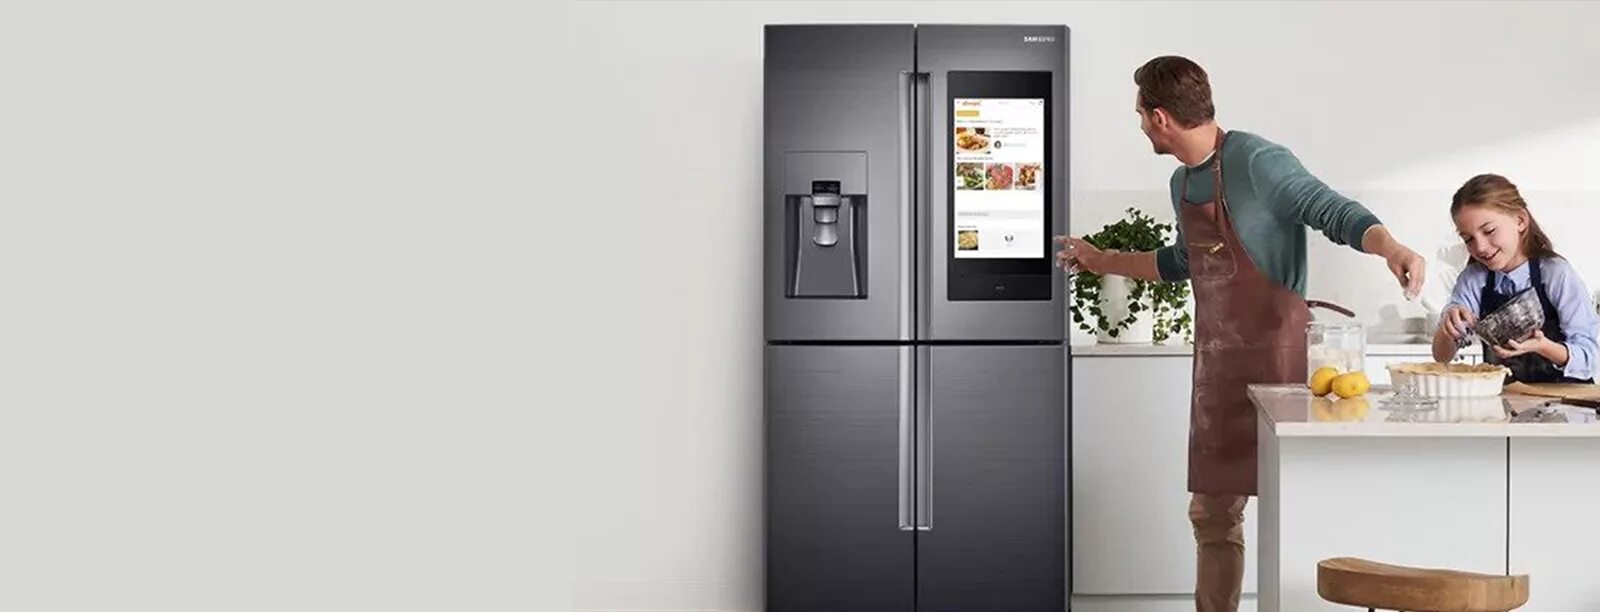 Холодильник Samsung баннер. Реклама холодильника самсунг. Современный американский холодильник от самсунг. Холодильник Samsung в интерьере.